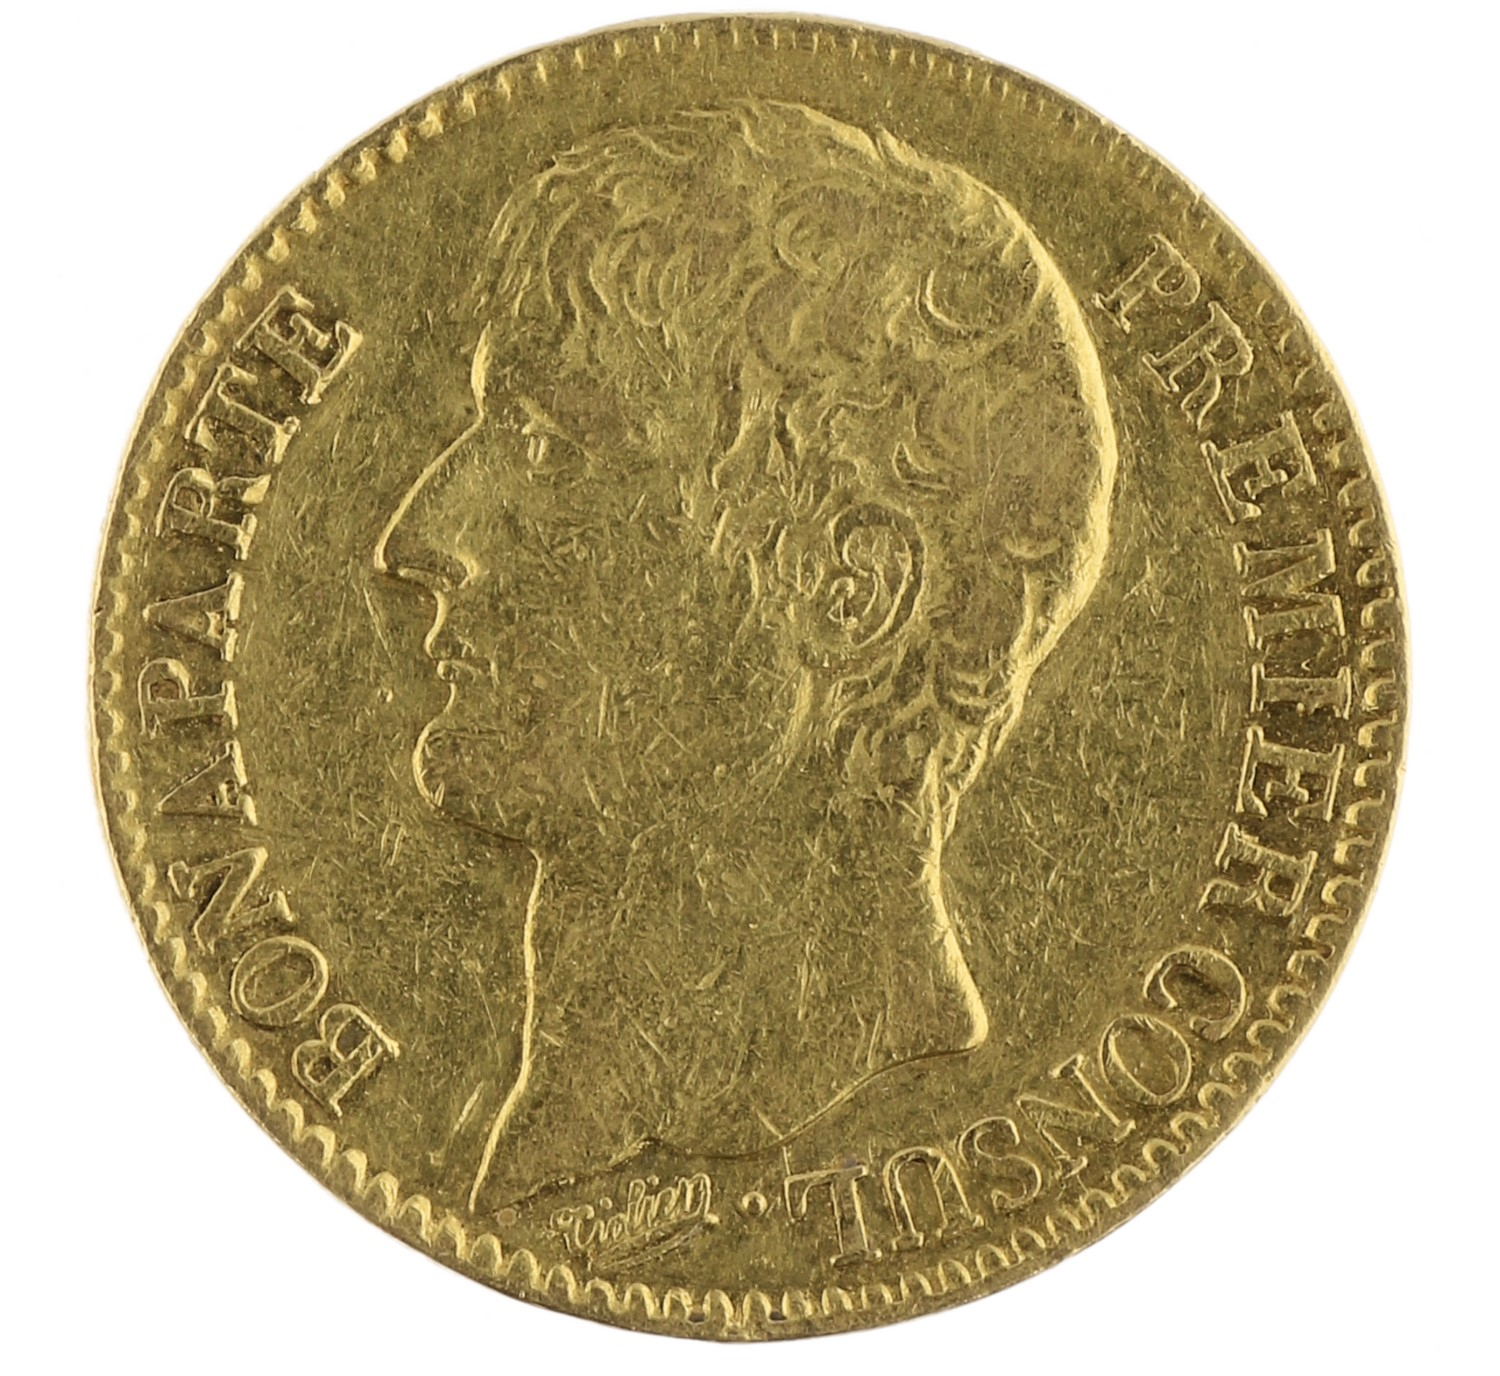 40 Francs - France - AN12 (1804) A